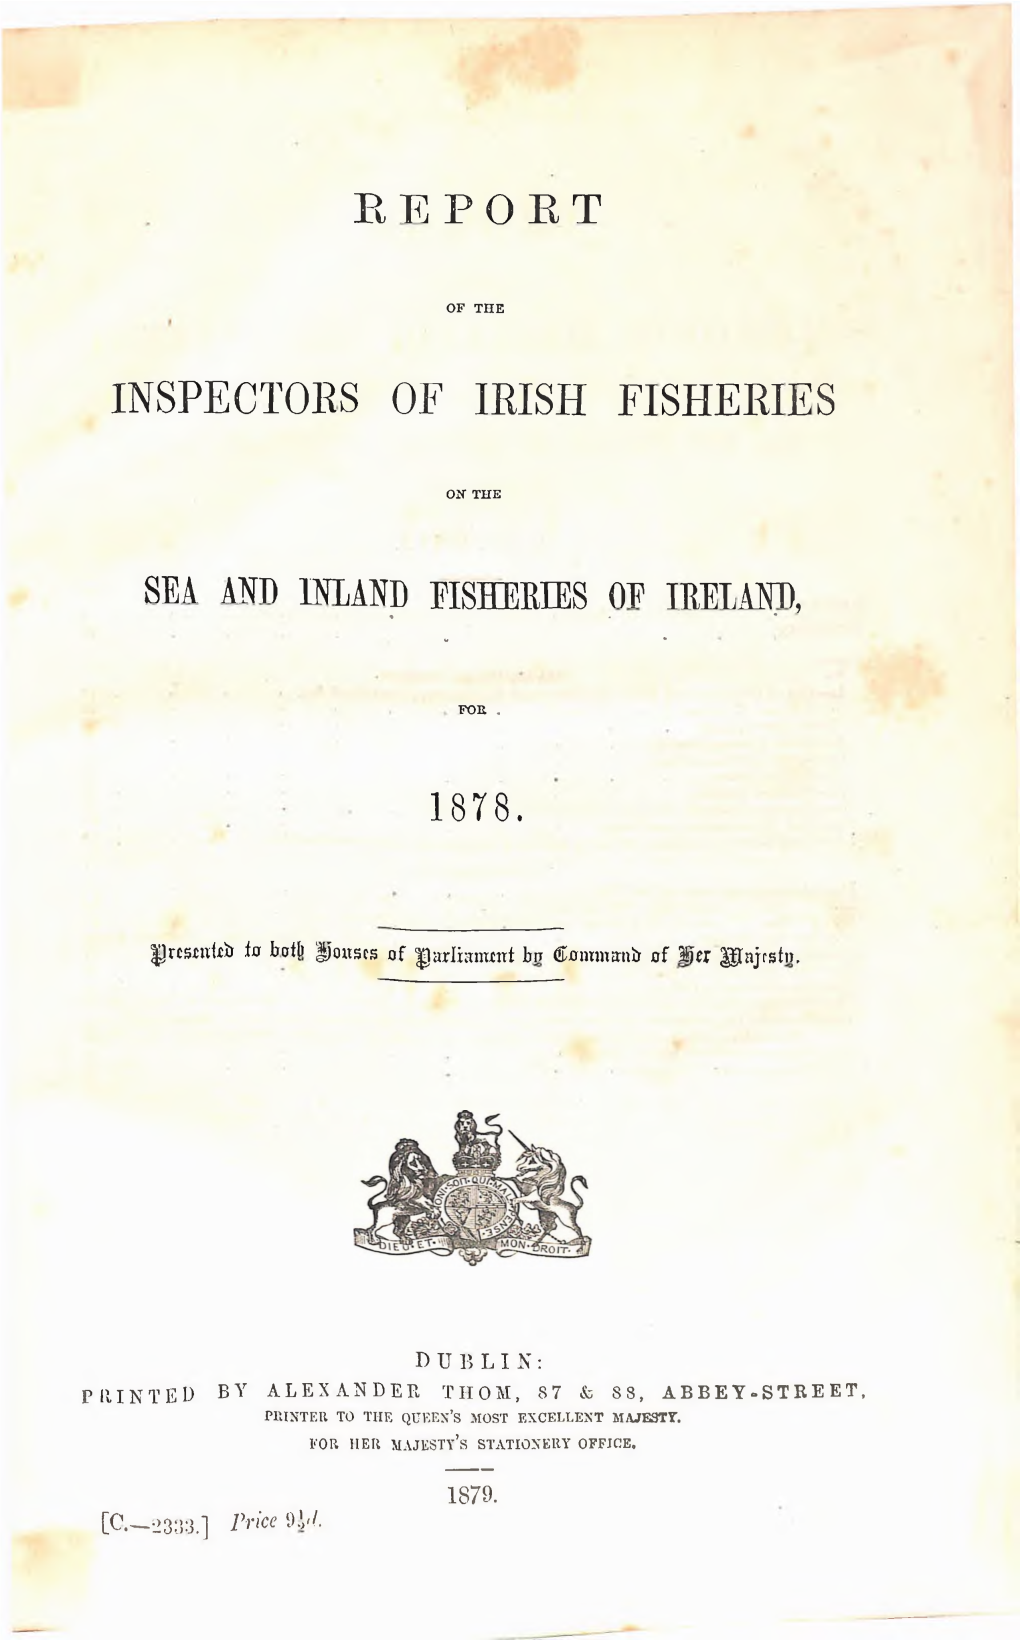 Inspectors of Irish Fisheries Fisheries Op Ireland